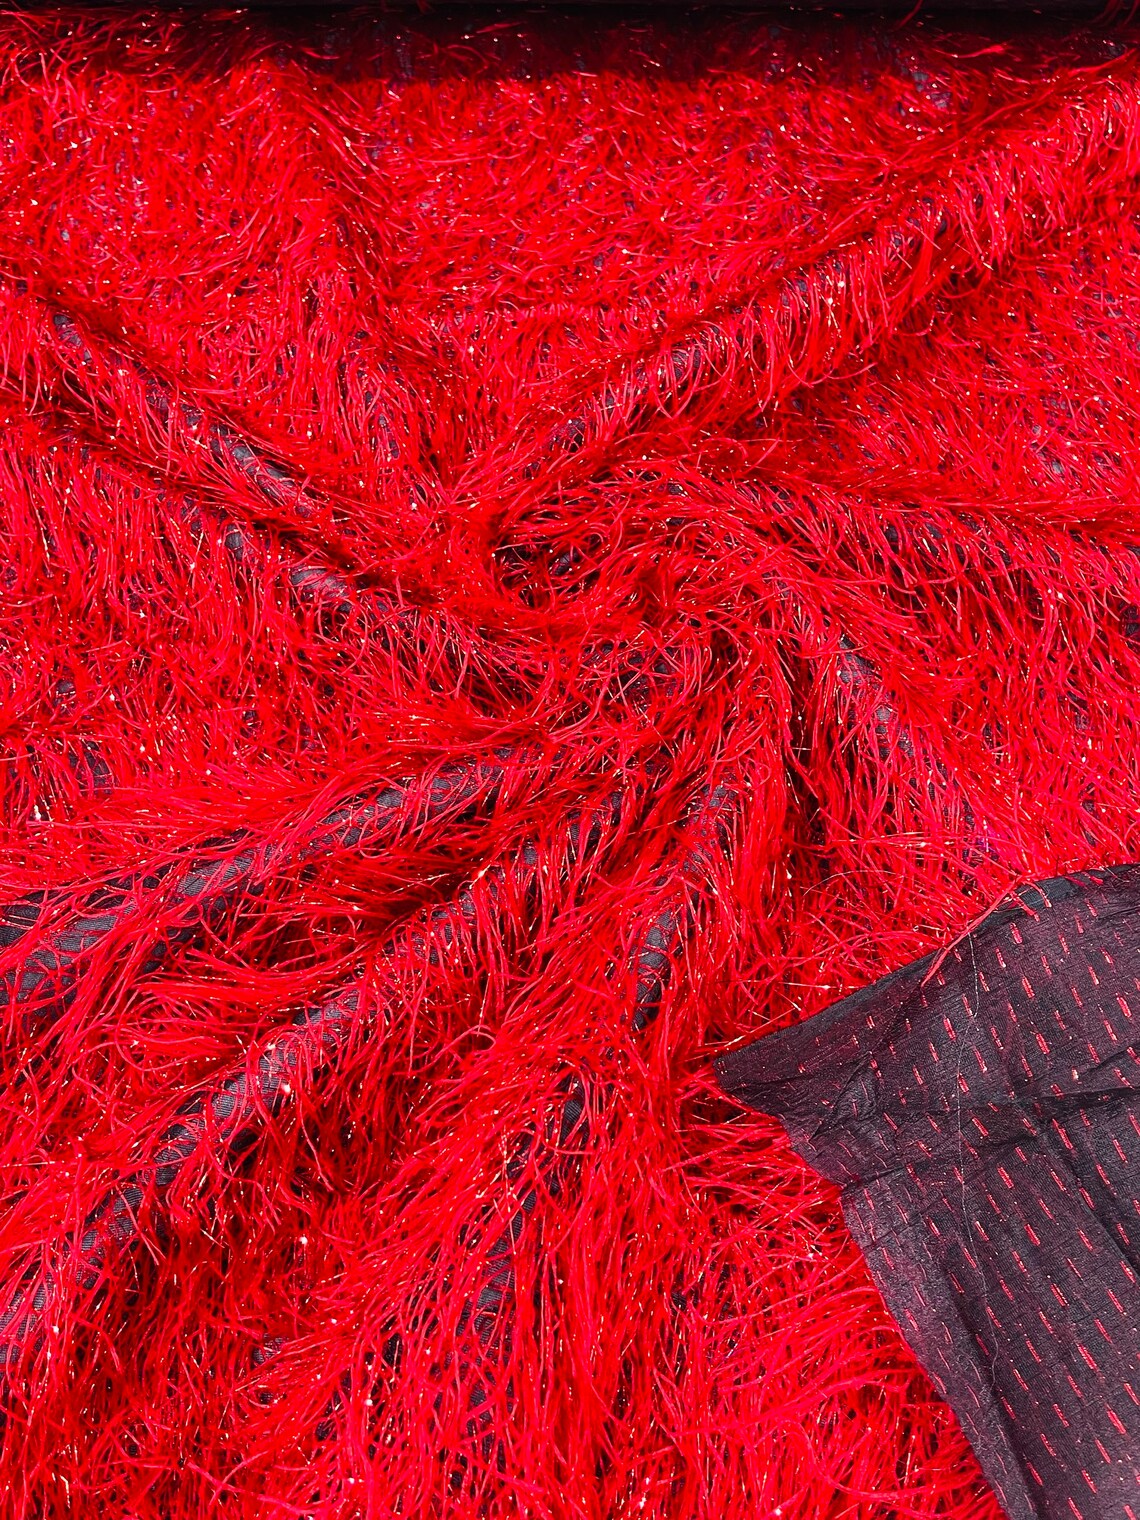 Eyelash Fringe Metallic Fabric - Red on Black - Hanging Fringe Metallic Decorative Crafts Dress Fabric By Yard